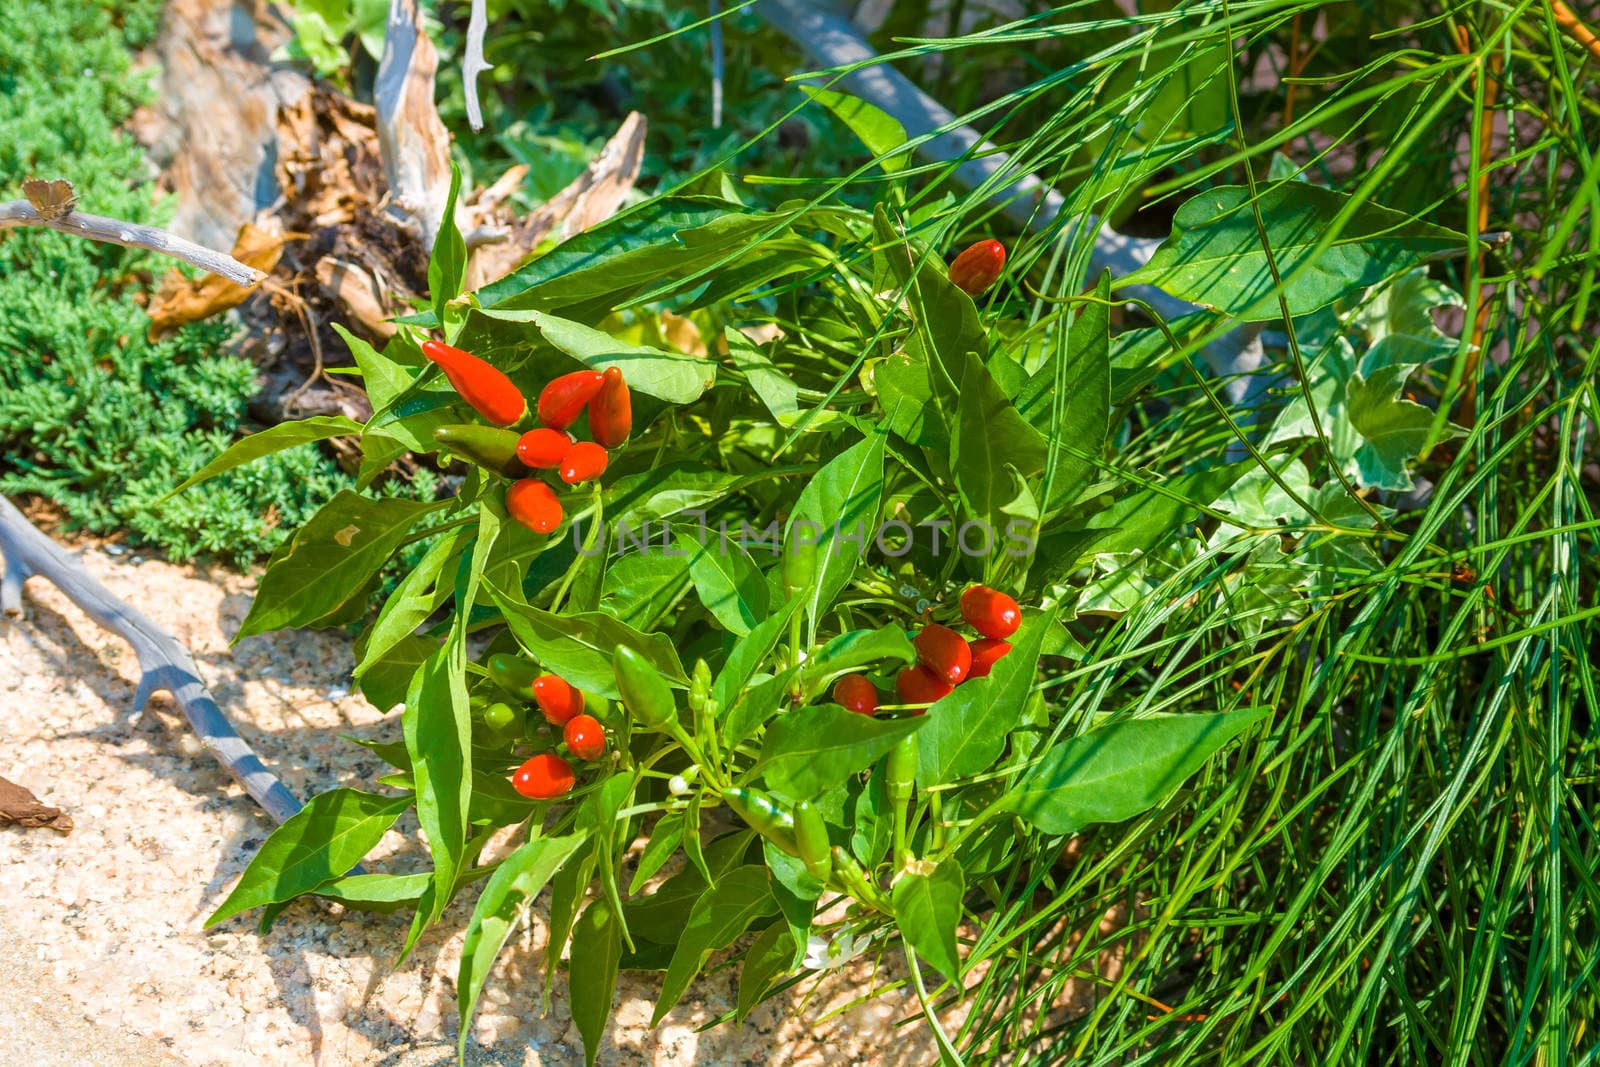 Organic wild chili peppers